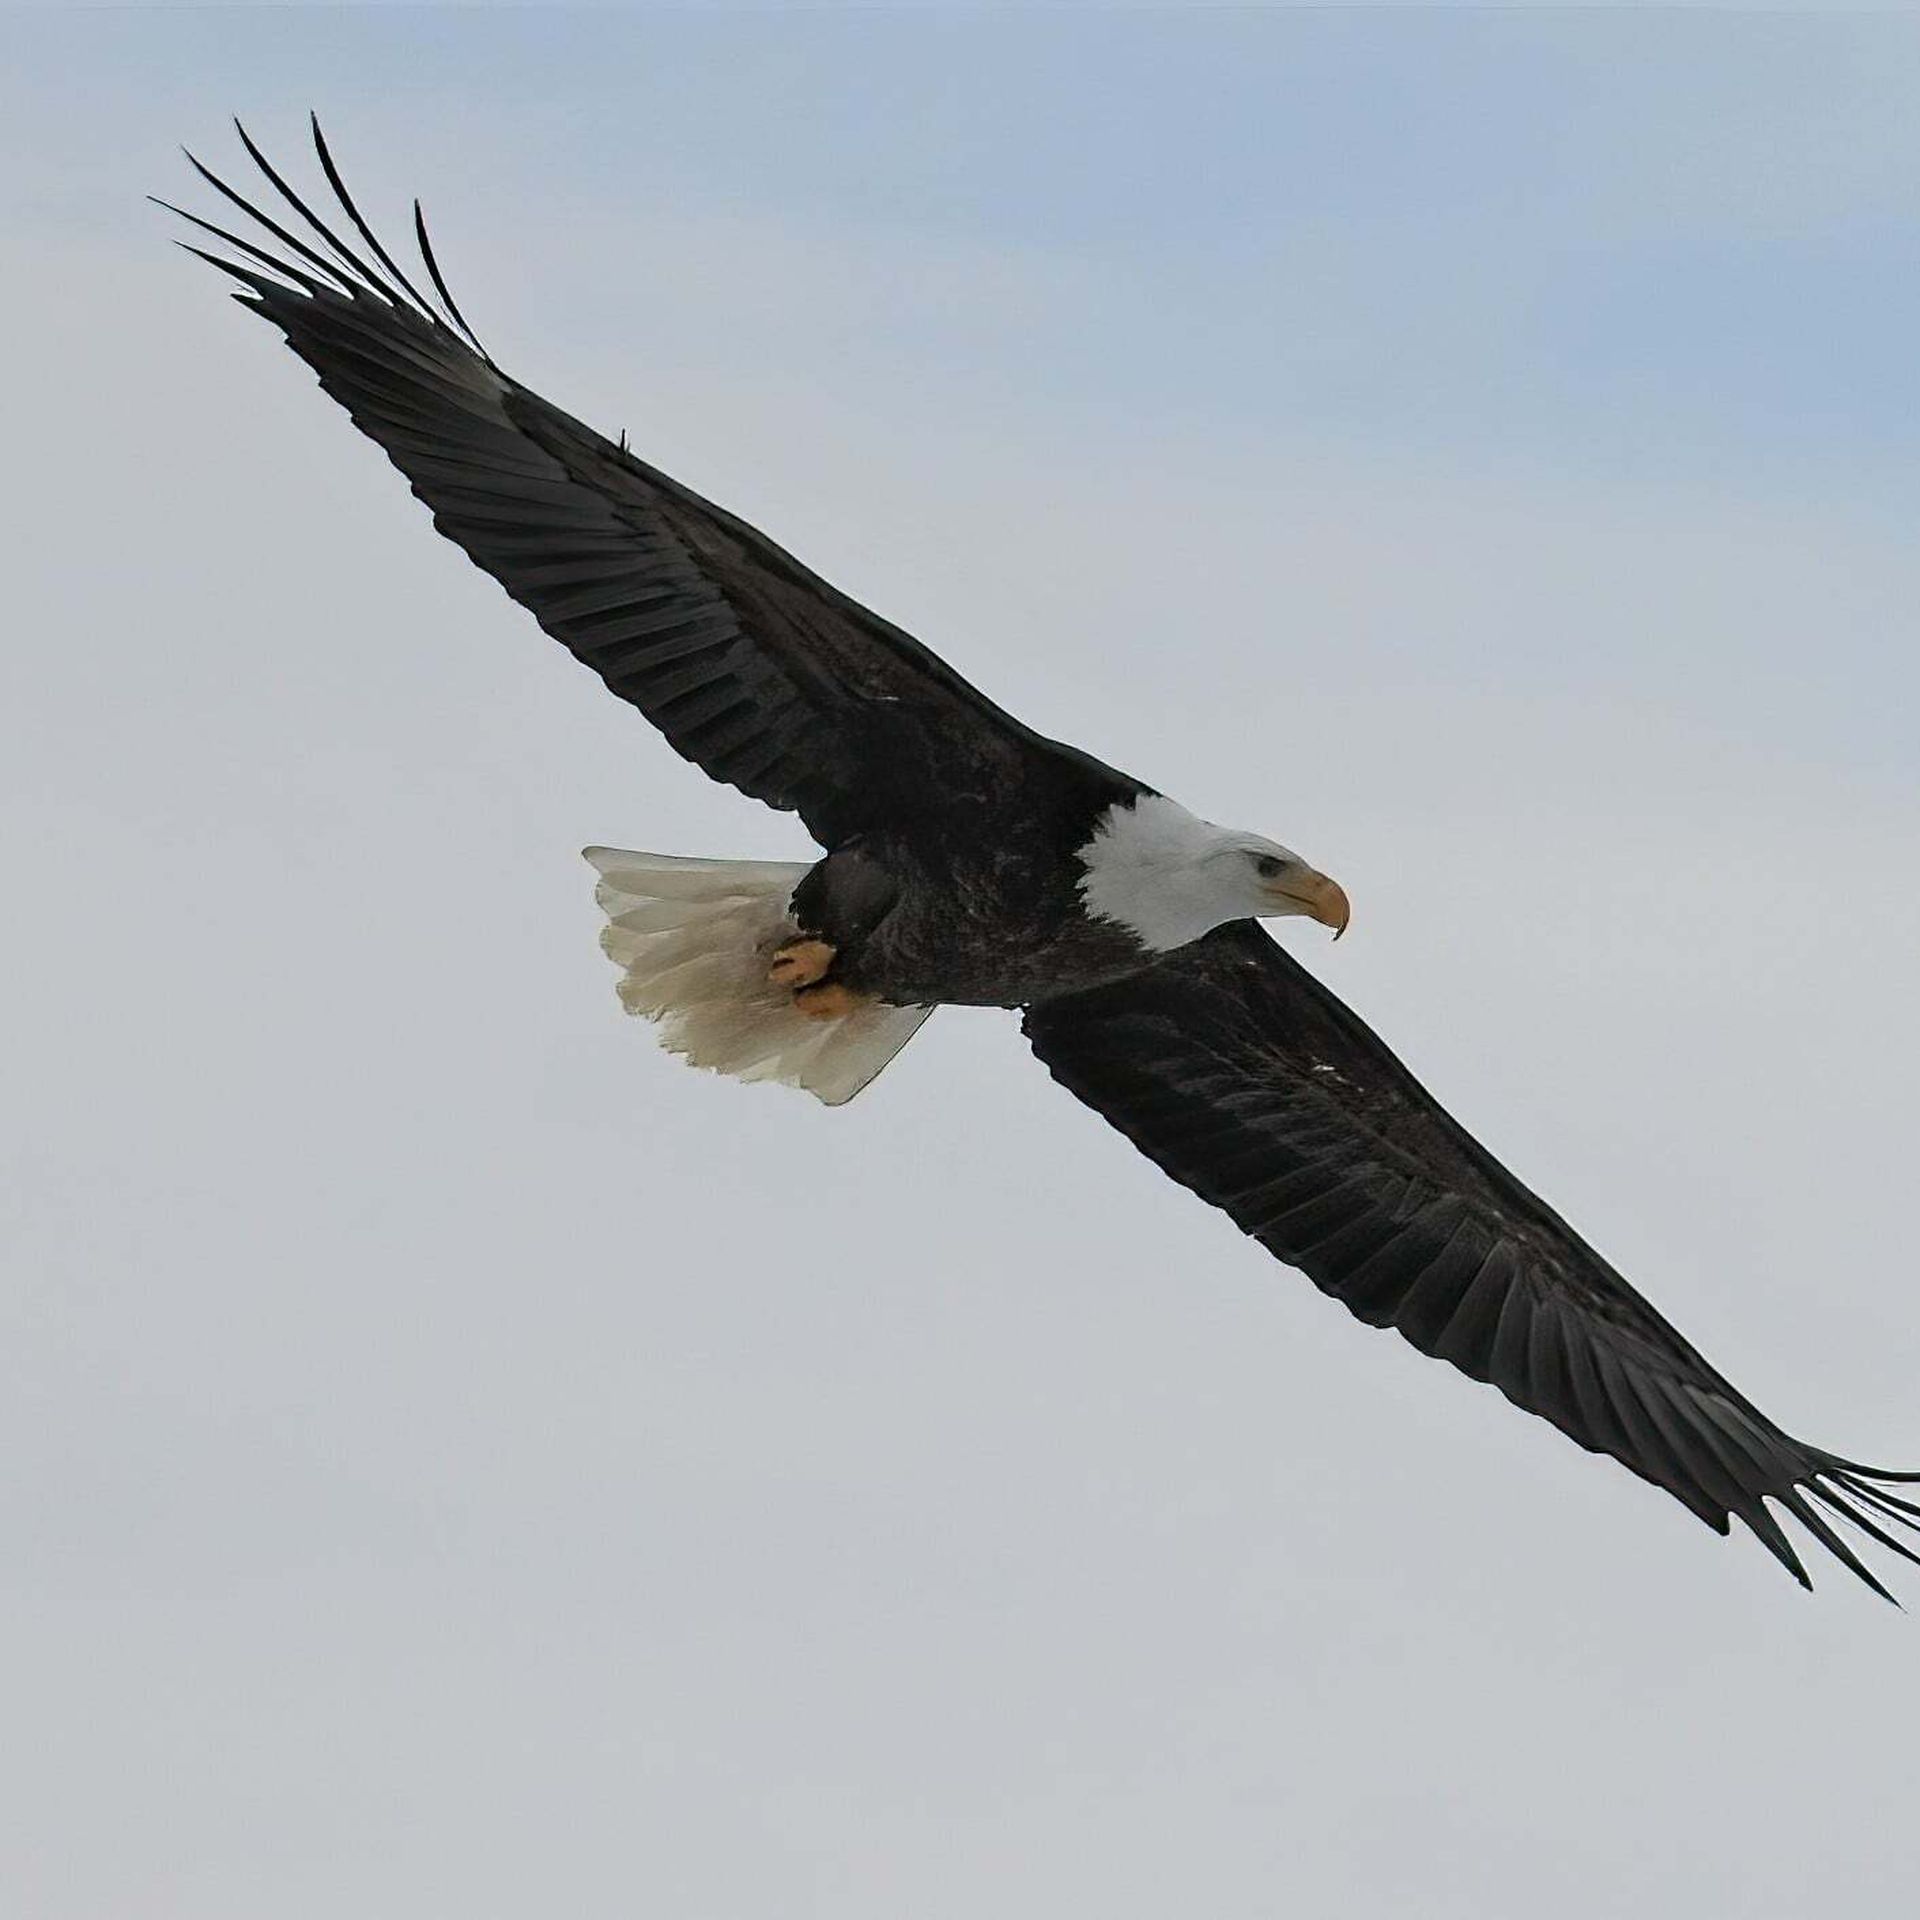 A bald eagle